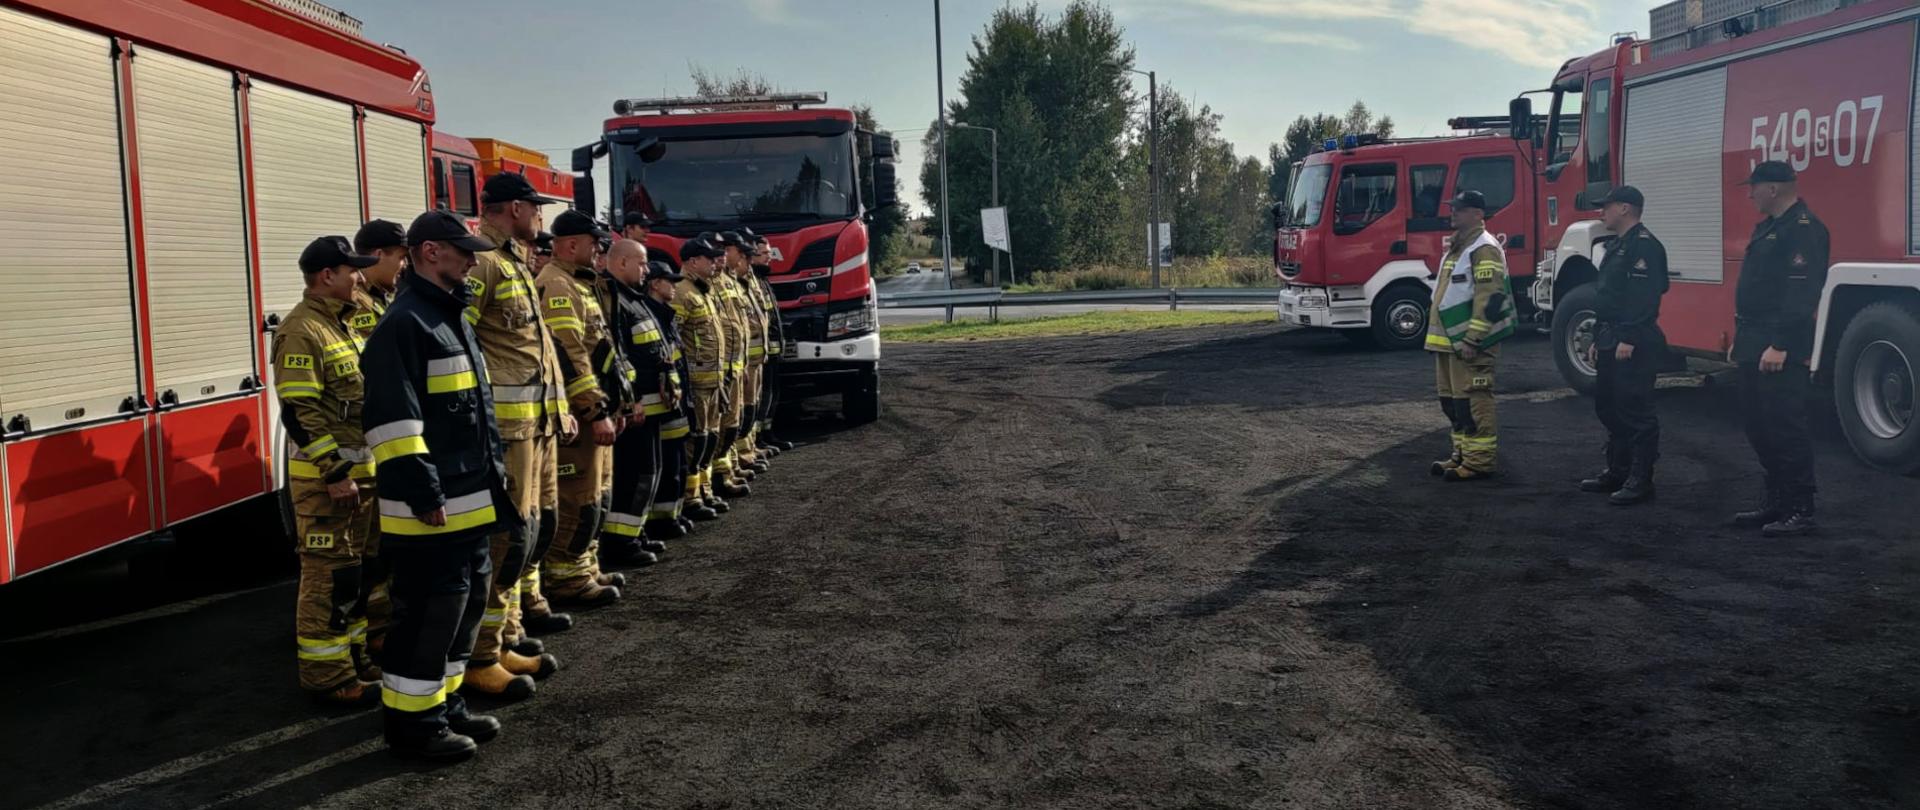 Zdjęcie przedstawia grupę strażaków stojących w dwuszeregu. Wokół rozstawione są pojazdy ratowniczo - gaśnicze.